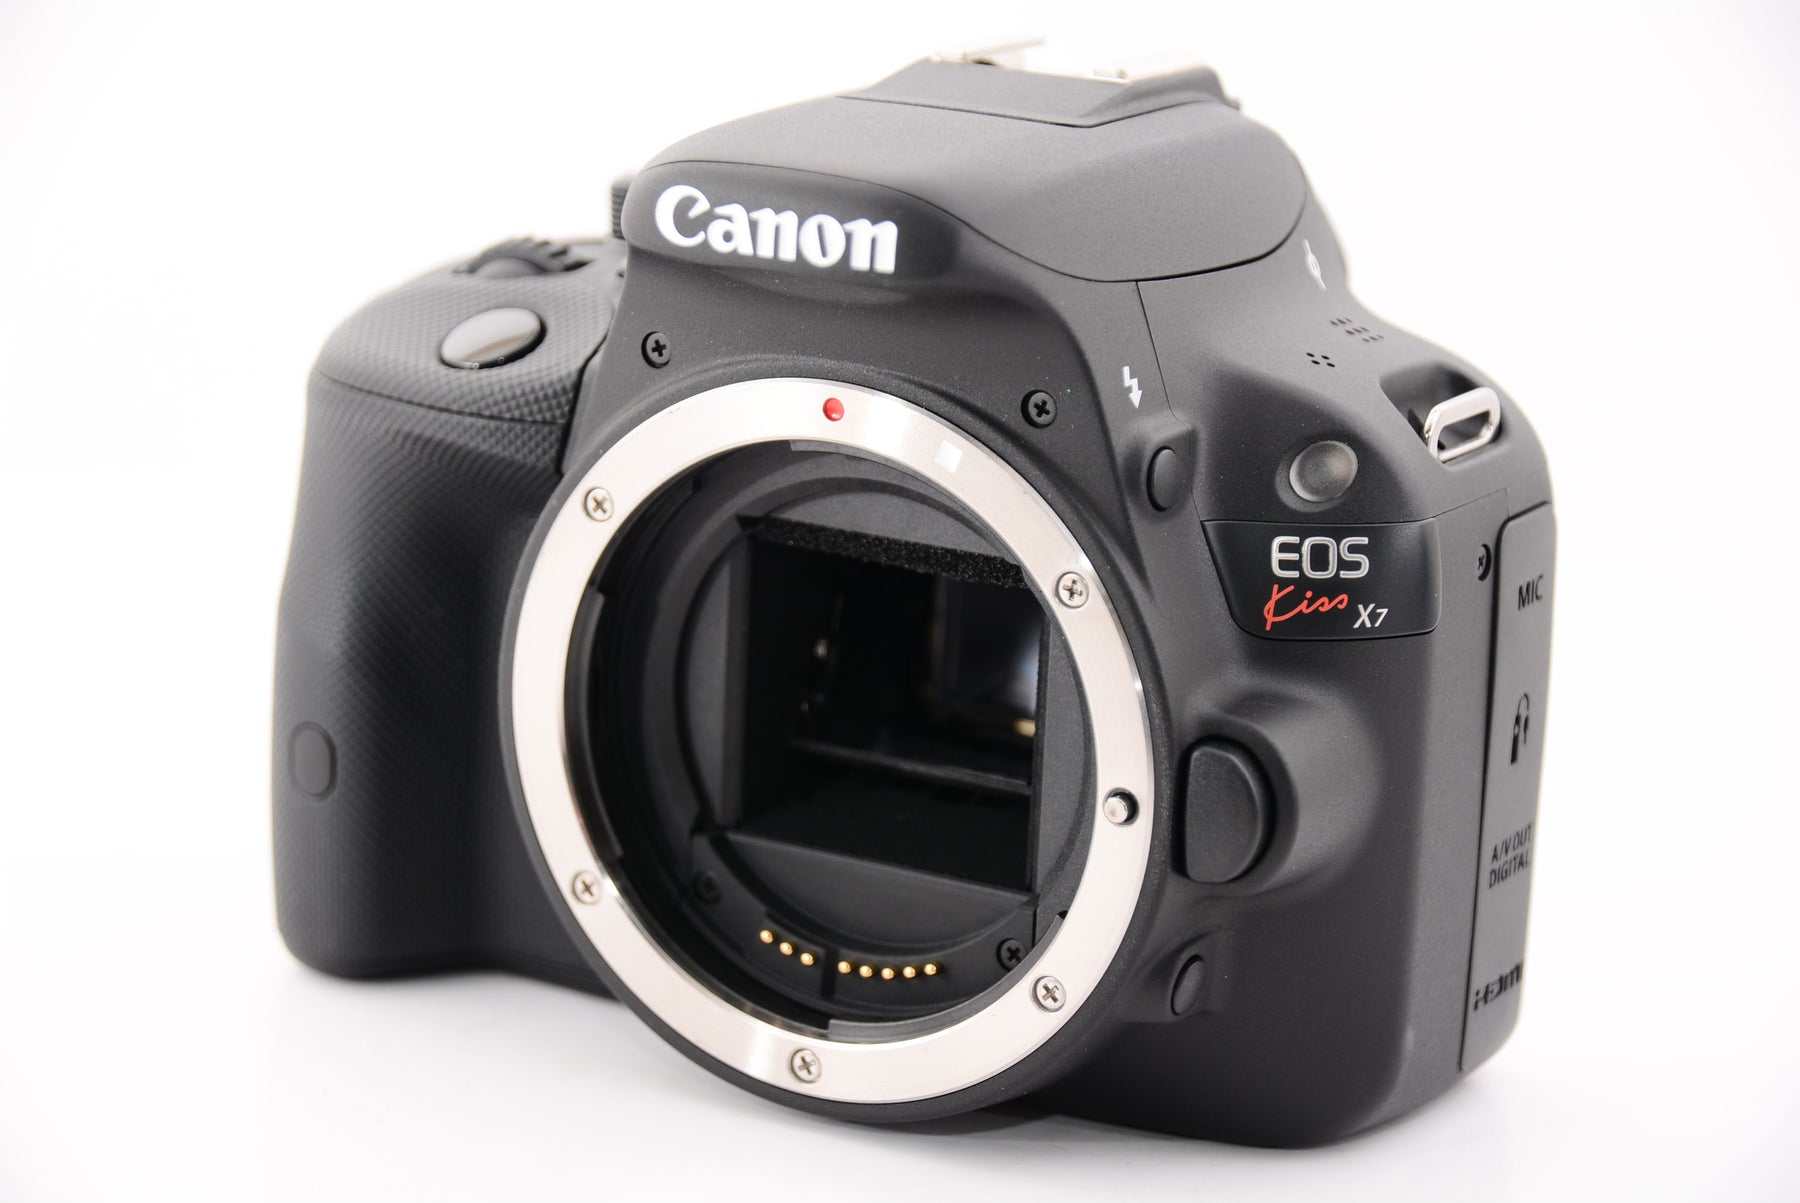 Canon デジタル一眼レフカメラ EOS Kiss X7 レンズキット EF-S18-55mm F3.5-5.6 IS STM付属 KISSX7-1 - 3